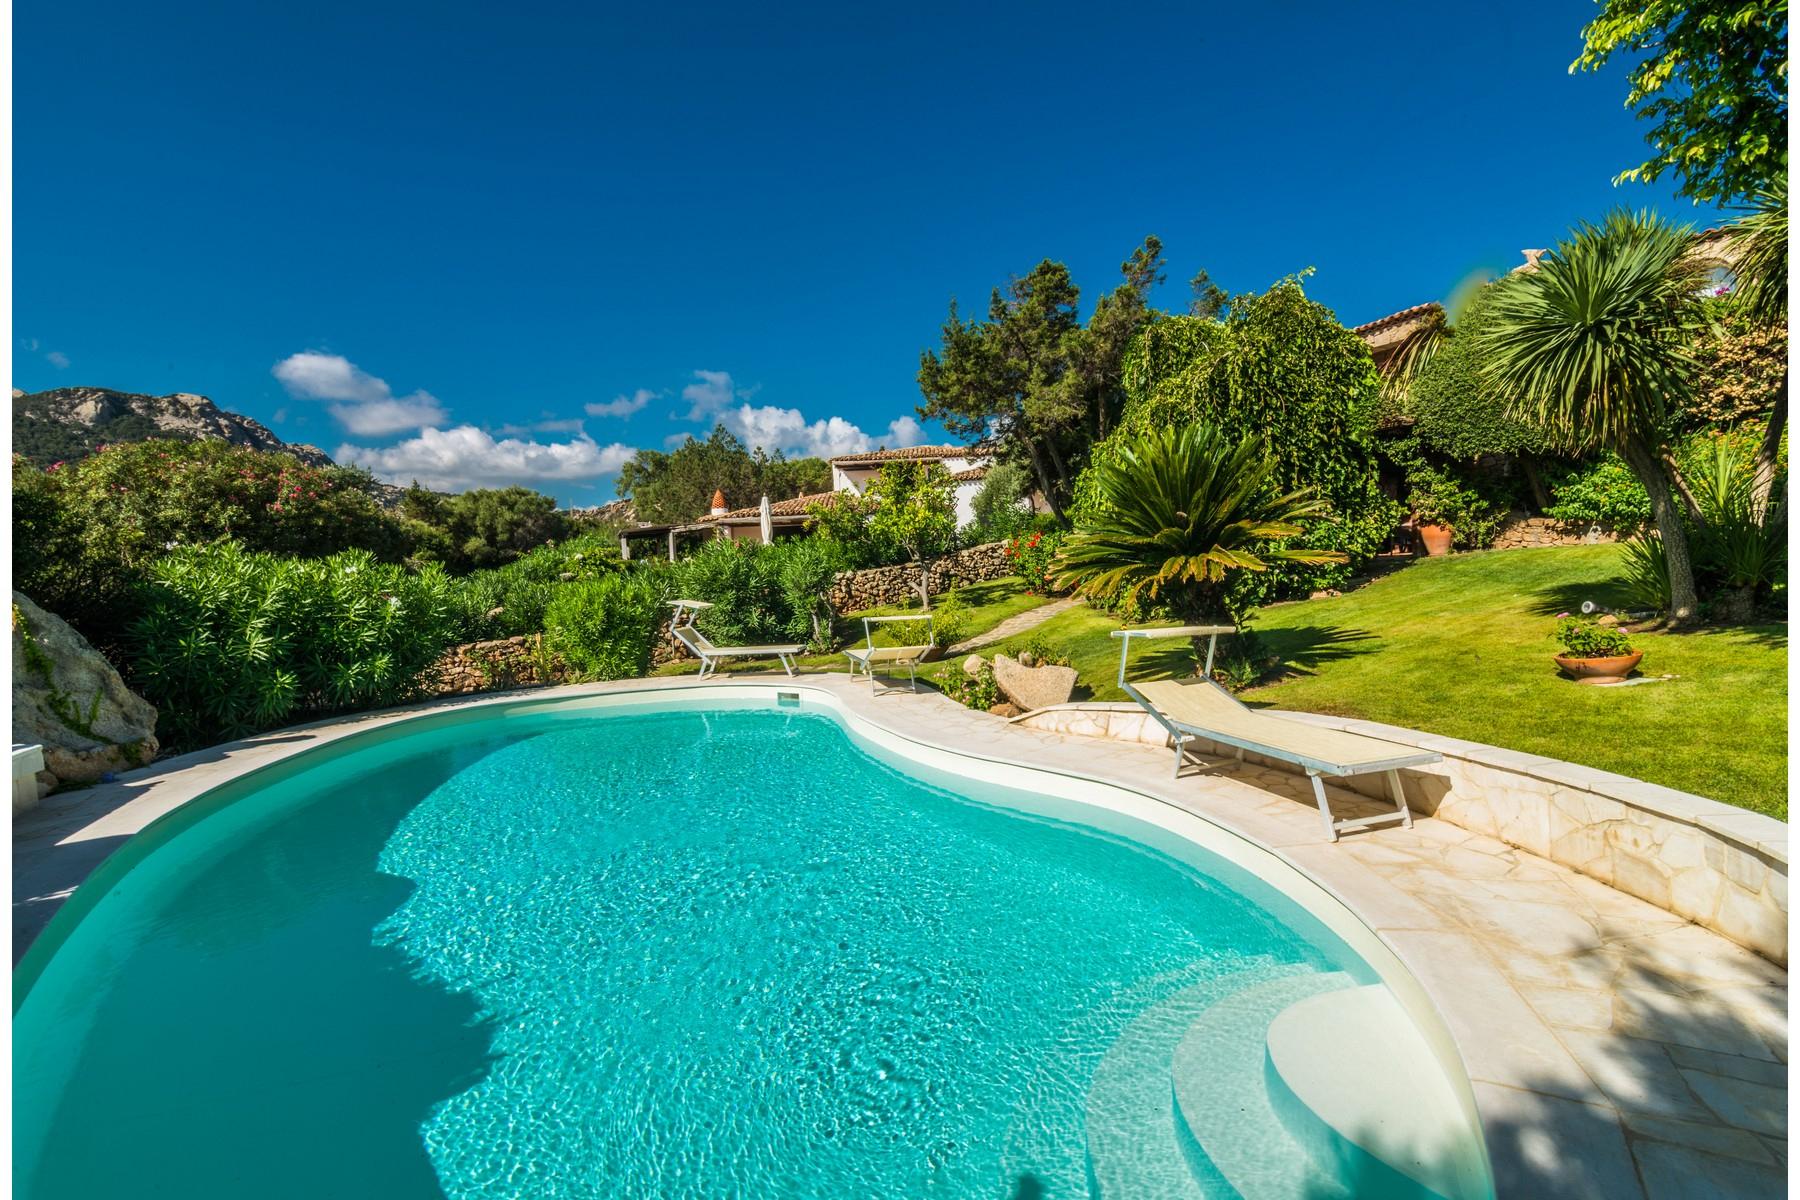 Porto Cervo Marina - Magnificient Villa with private pool - 1